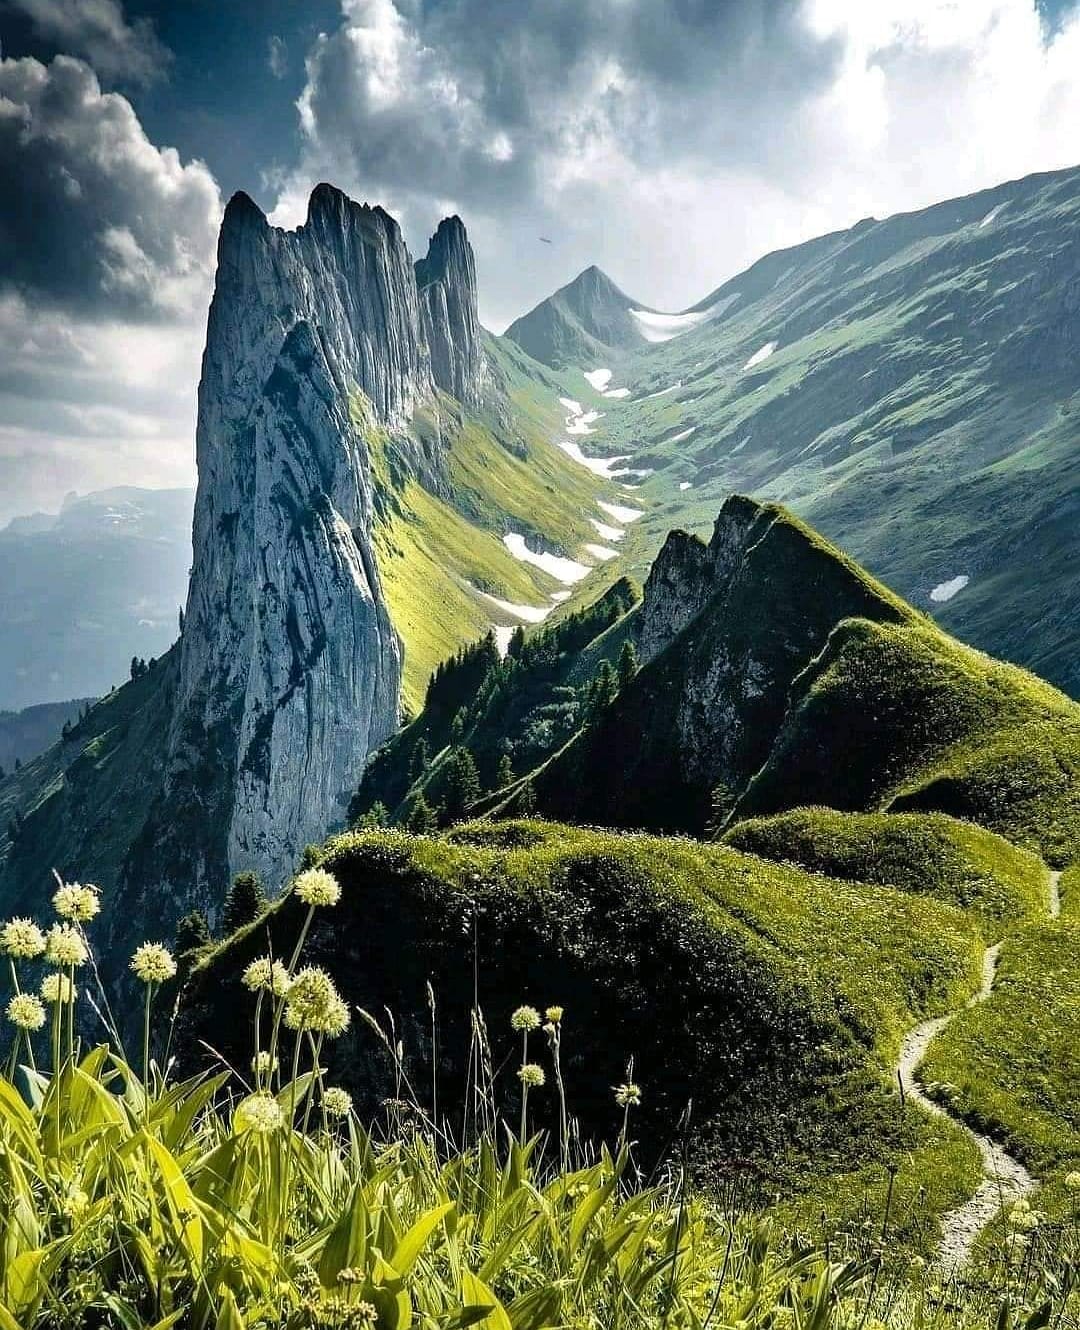 Beautiful nature, Switzerland.